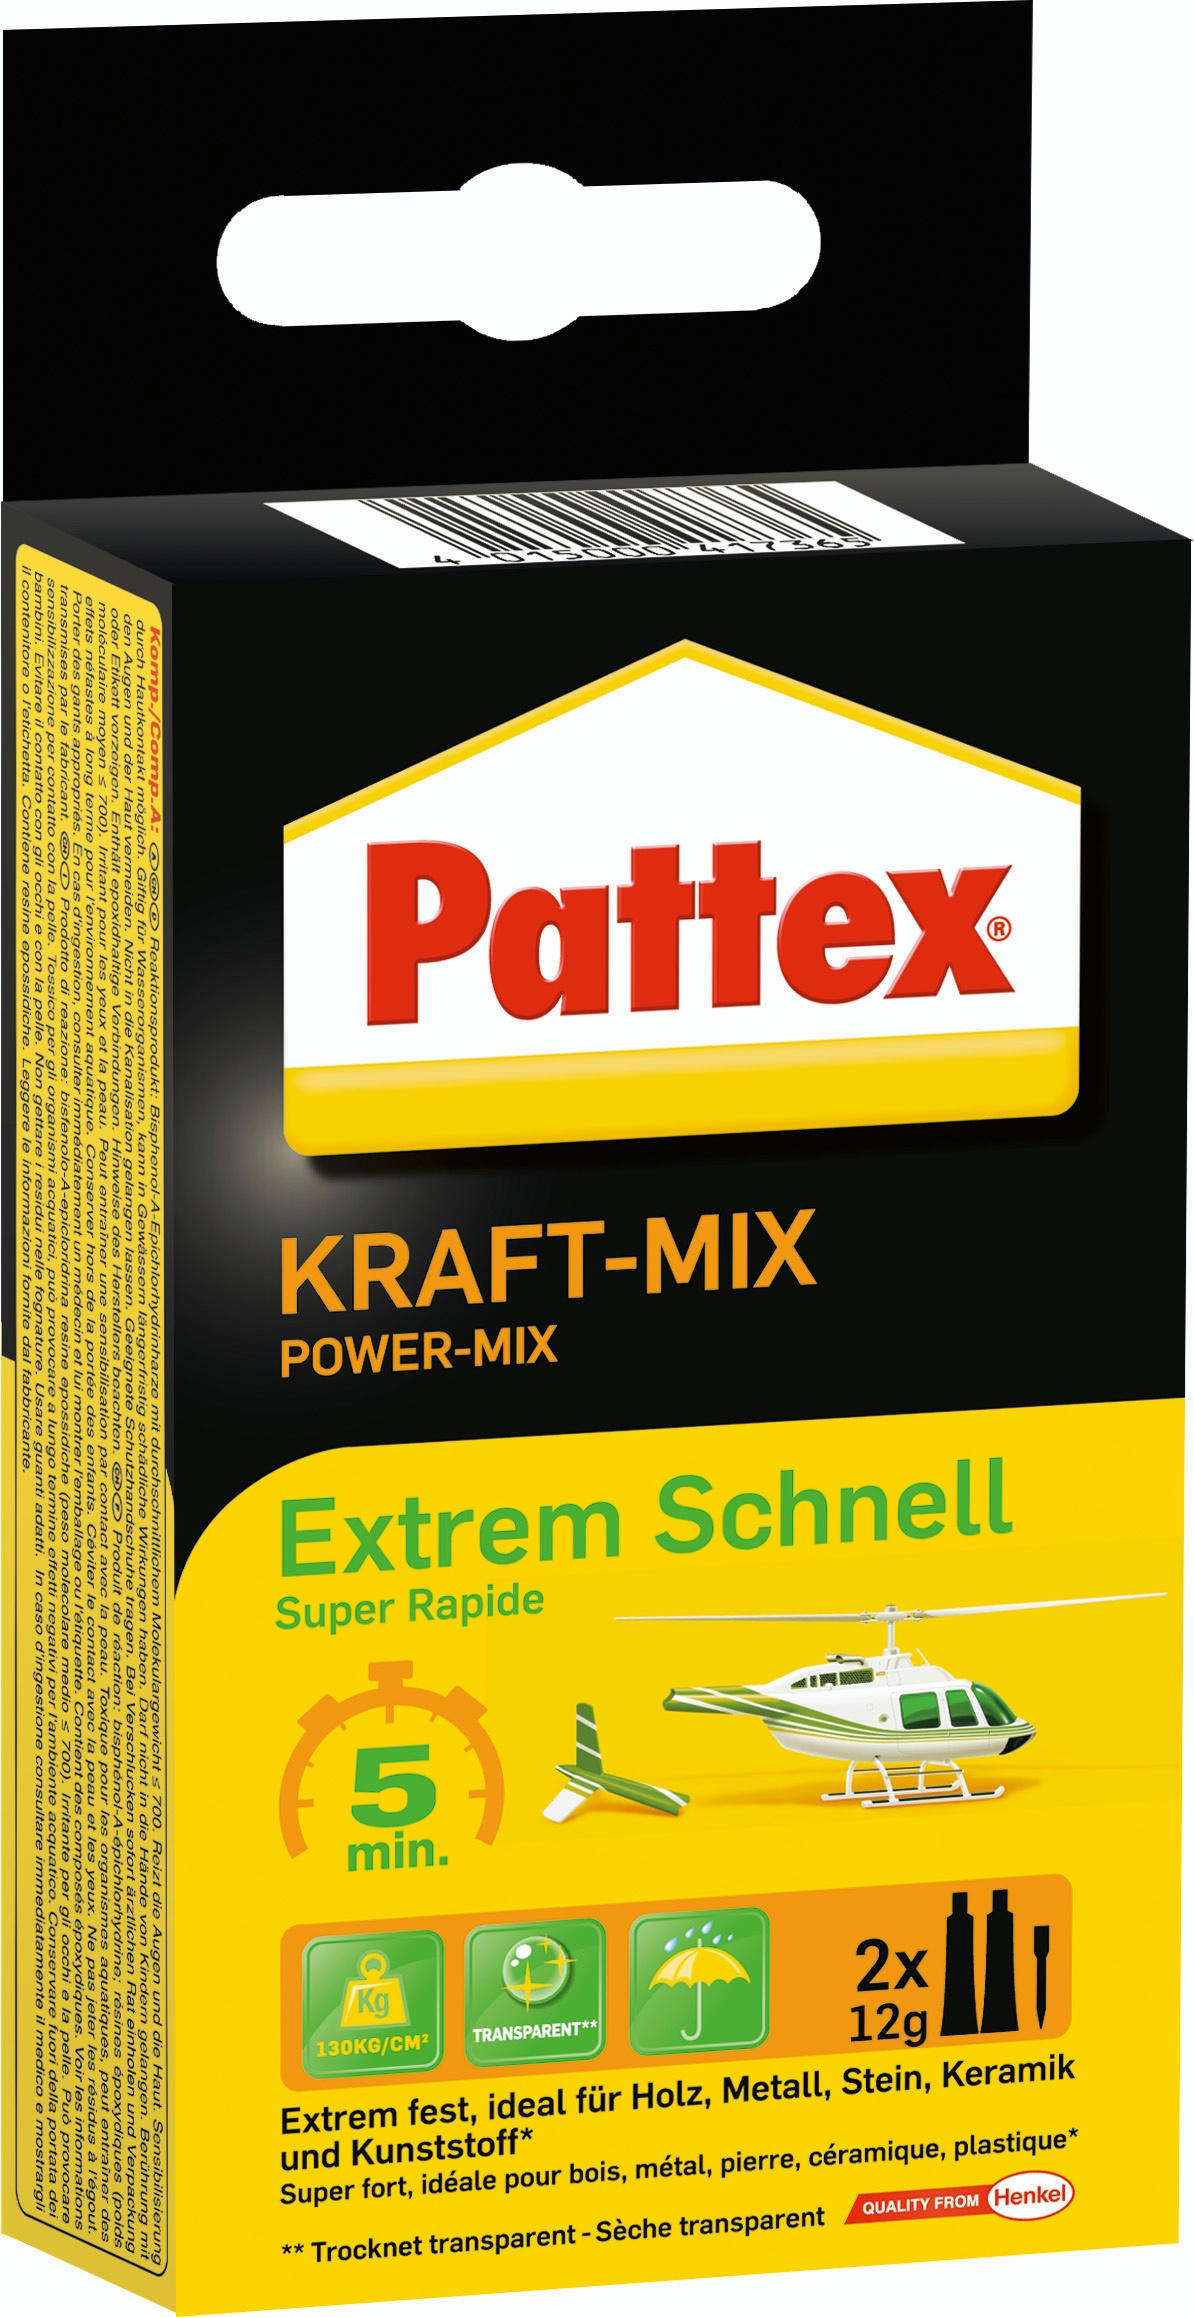 Pattex® Kraft-Mix Extrem Schnell 2x12 g